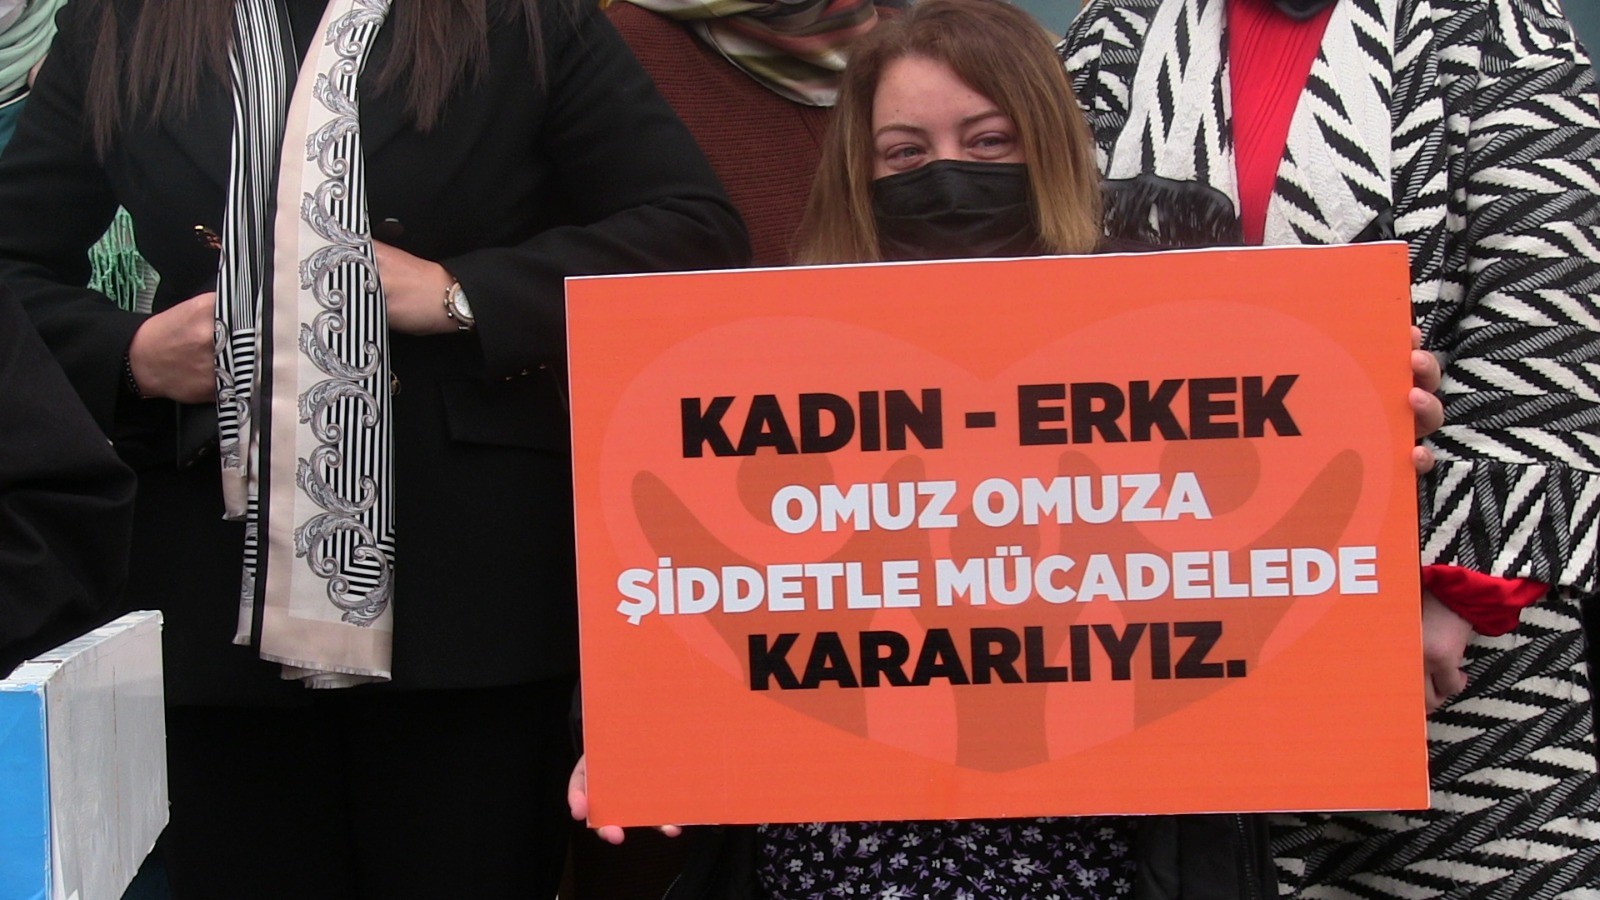 AK Partili kadınlar: “Kadına şiddet, insanlığa ihanettir”;